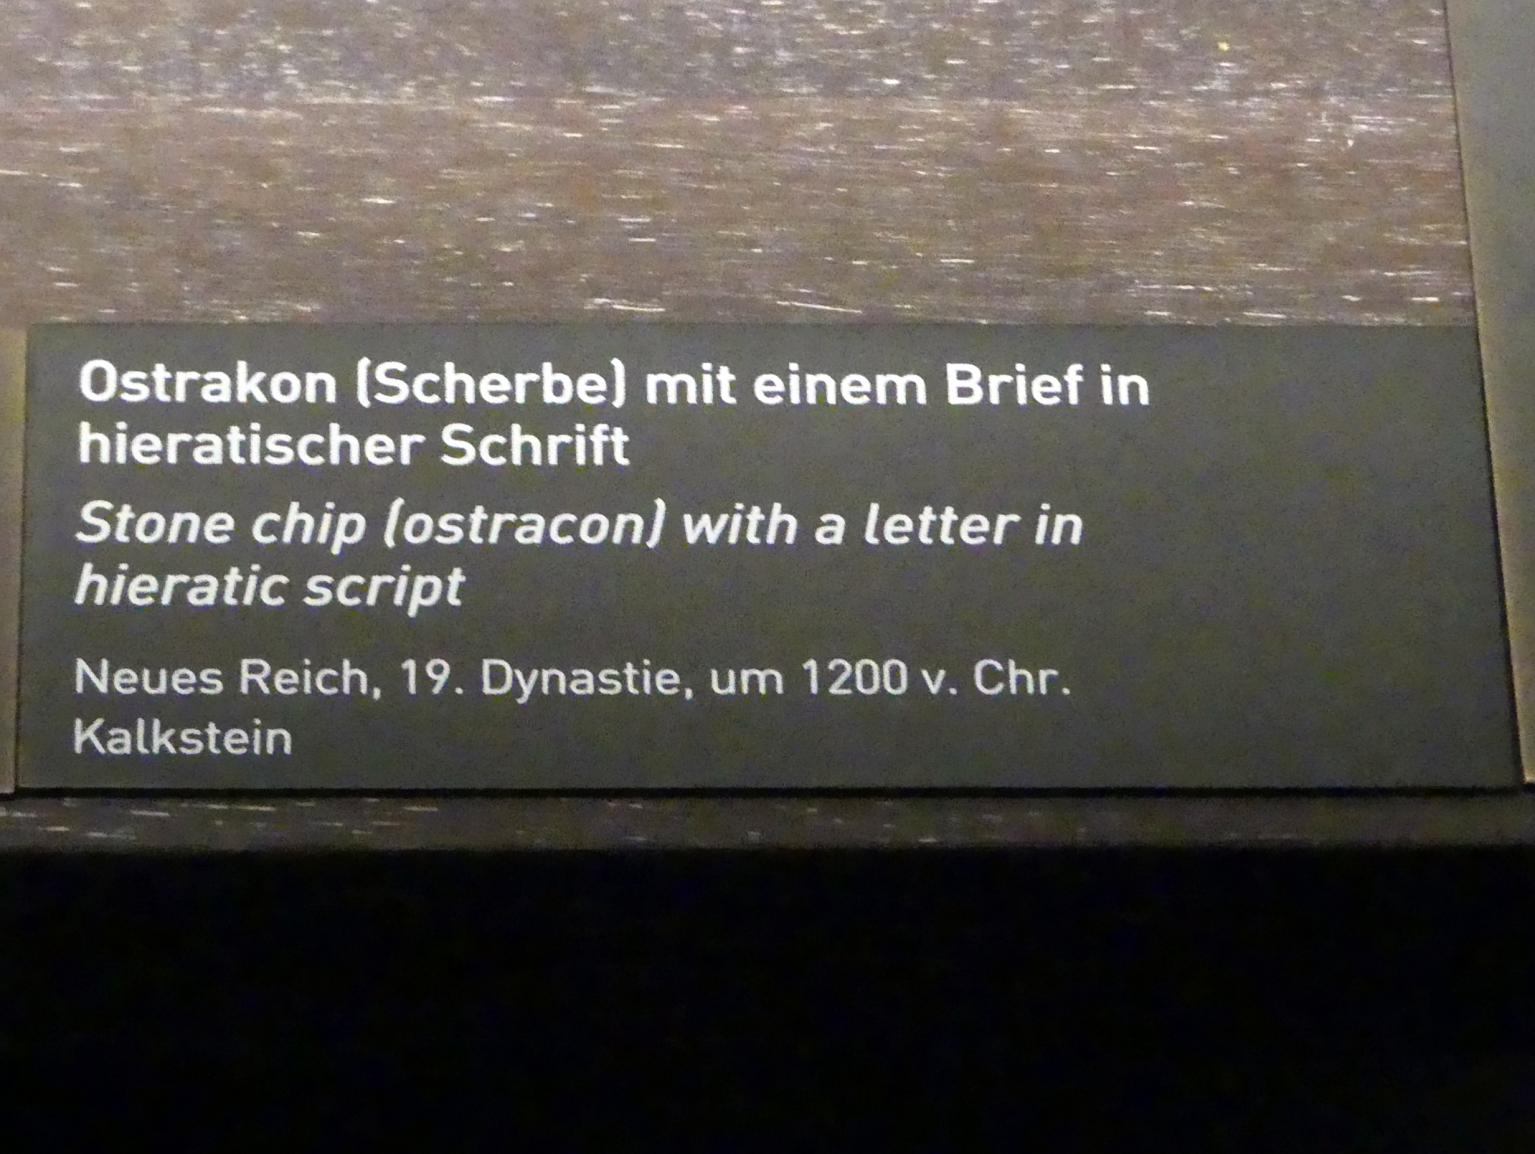 Ostrakon (Scherbe) mit einem Brief in hieratischer Schrift, 19. Dynastie, 953 - 887 v. Chr., 1200 v. Chr., Bild 2/2